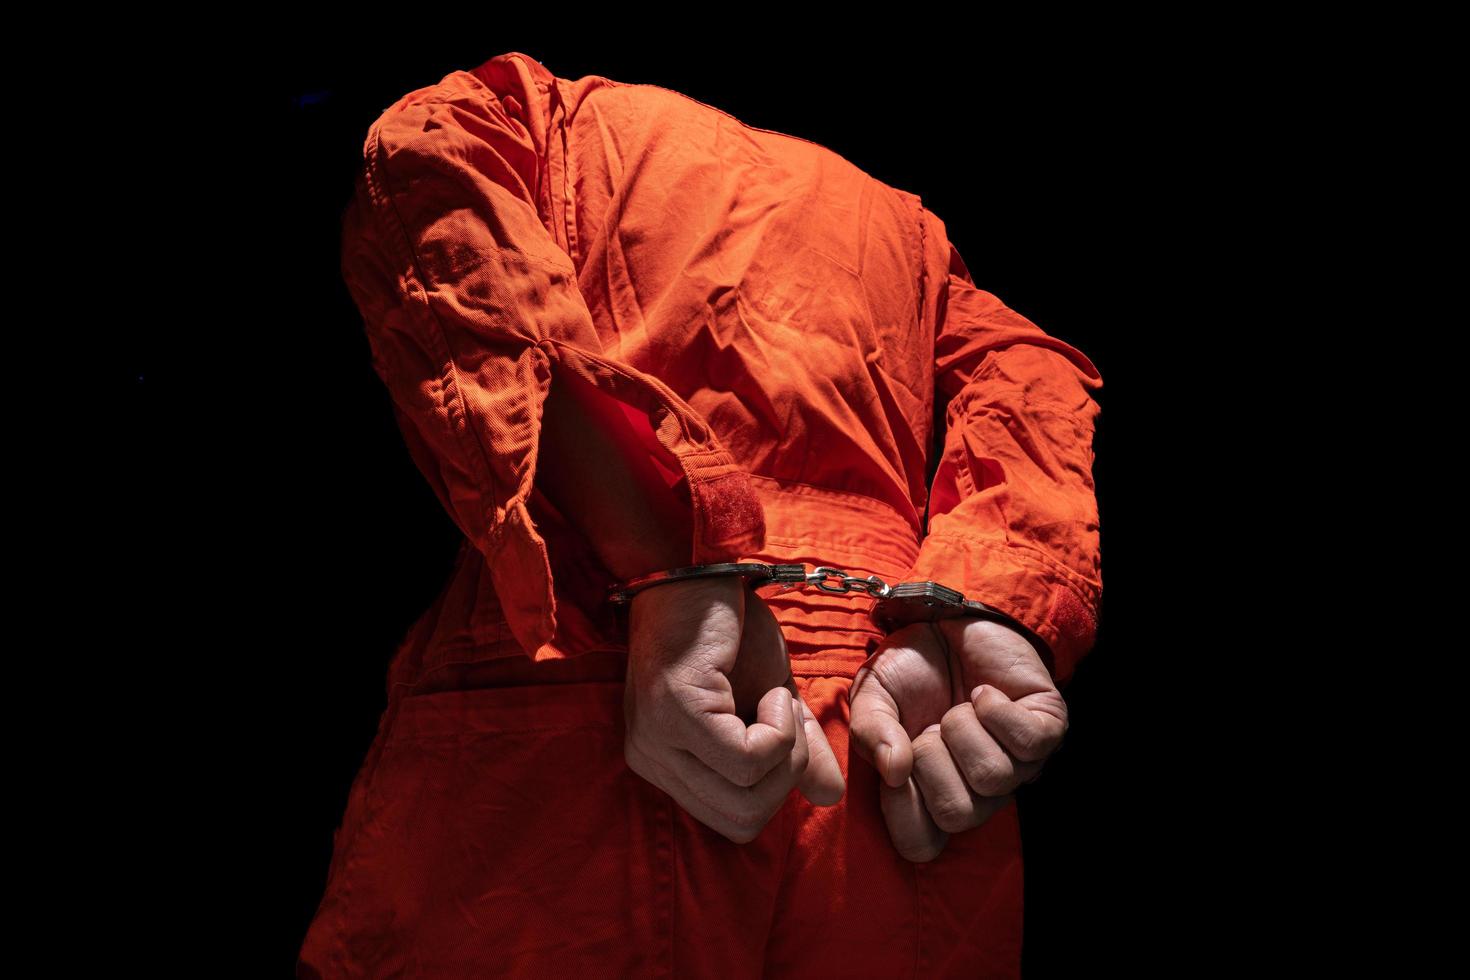 manette su accusato penale nel arancia prigione tuta. legge colpevole condannato per servire prigione volta, nel nero sfondo foto